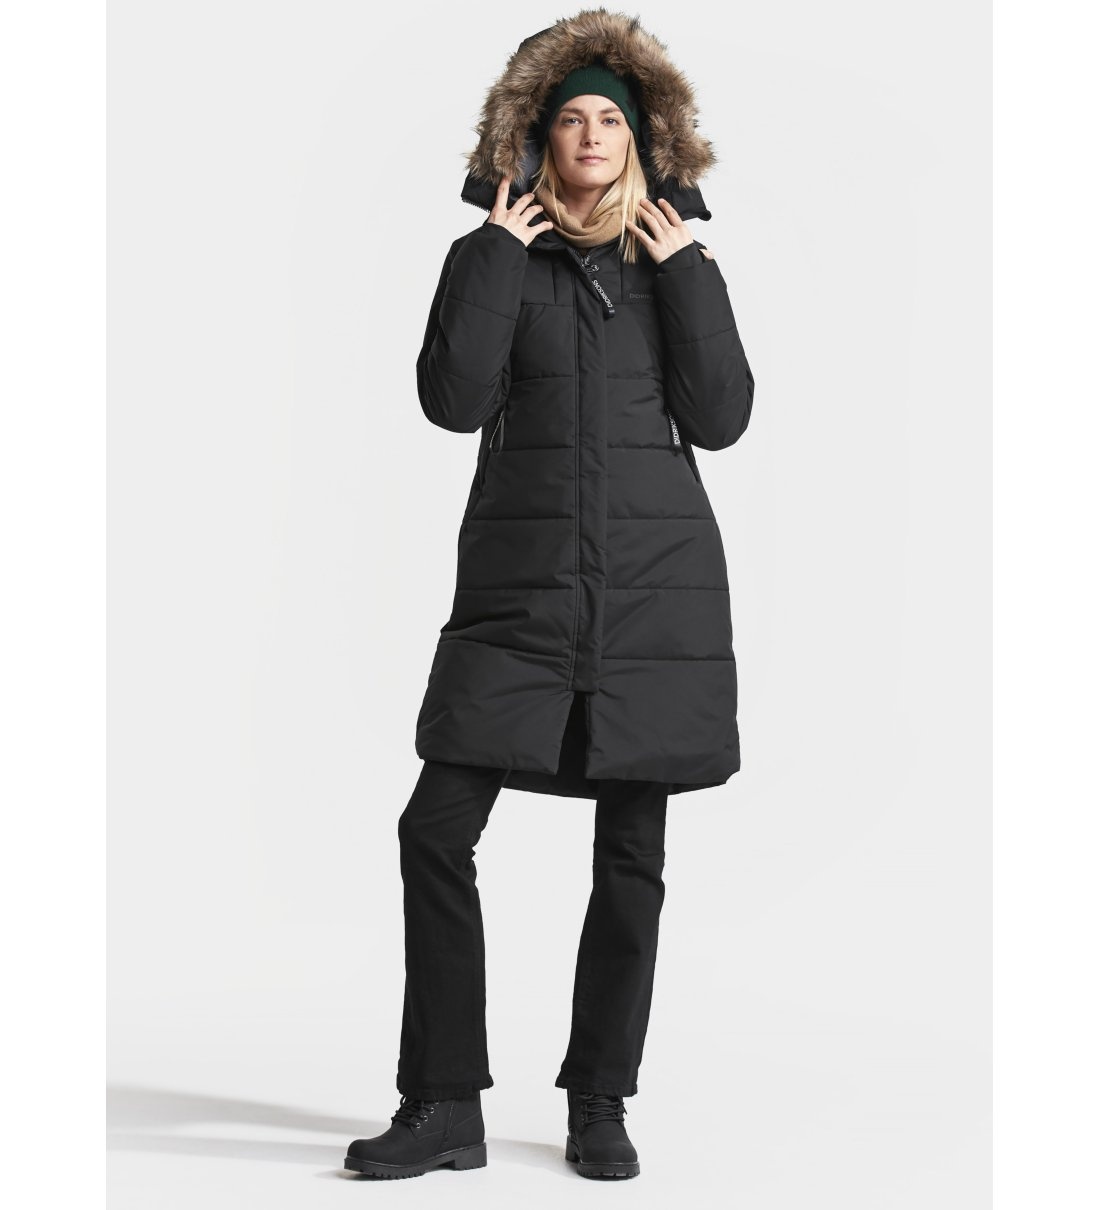 Куртка зимняя Didriksons VALENTINA 502657-060 черная - купить в  интернет-магазине BonKids.ru